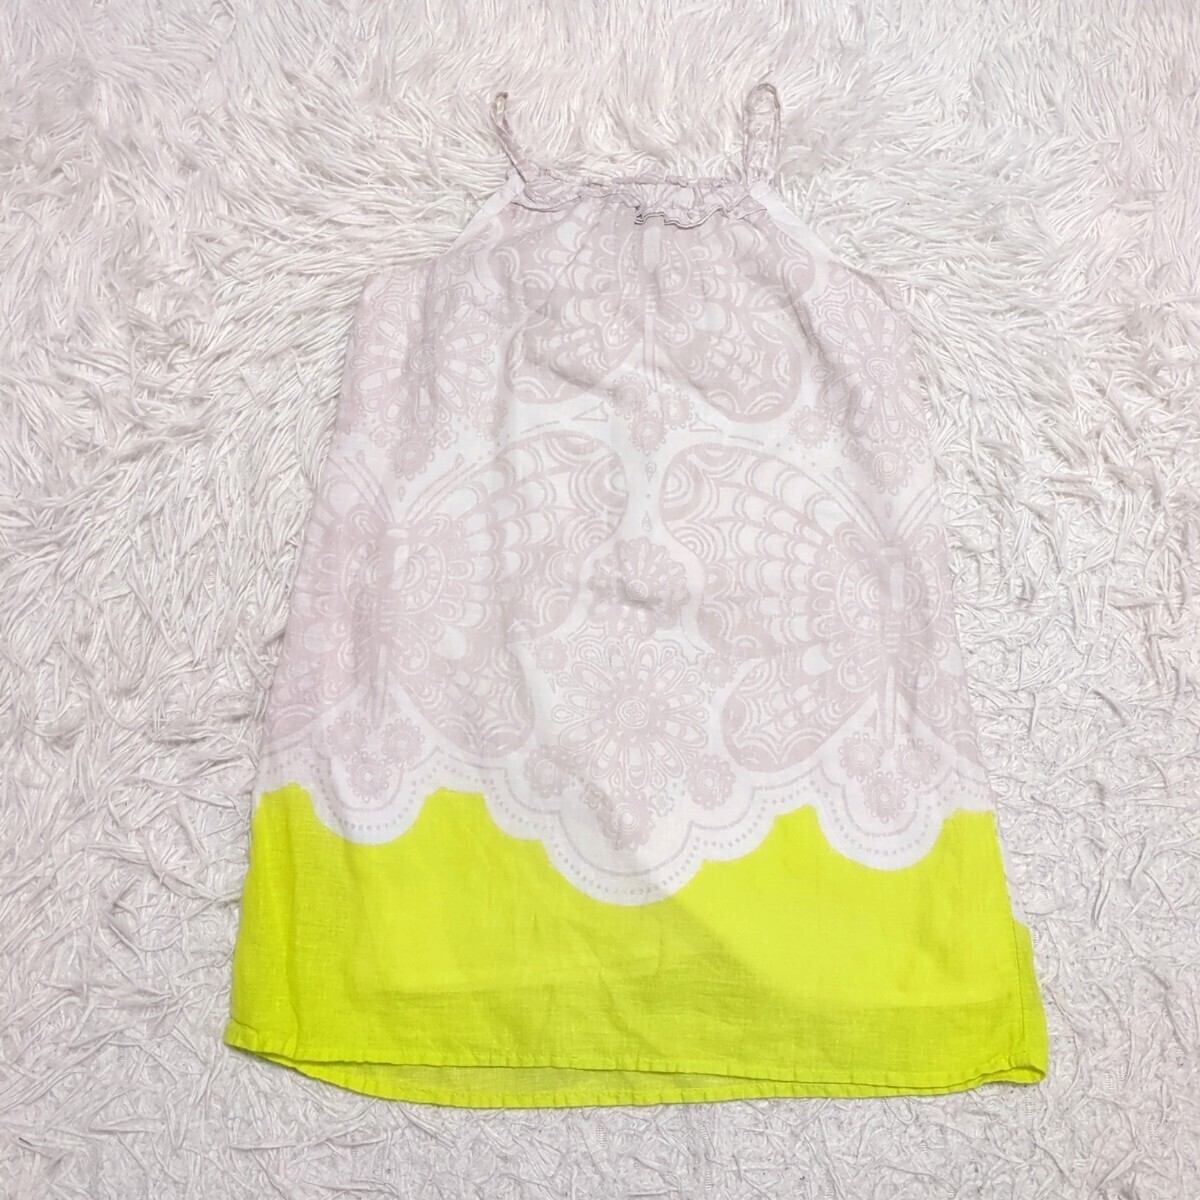 【送料無料】OLDNAVY オールドネイビー キャミソール ワンピース 5 110cmぐらい キッズ 子供服の画像2